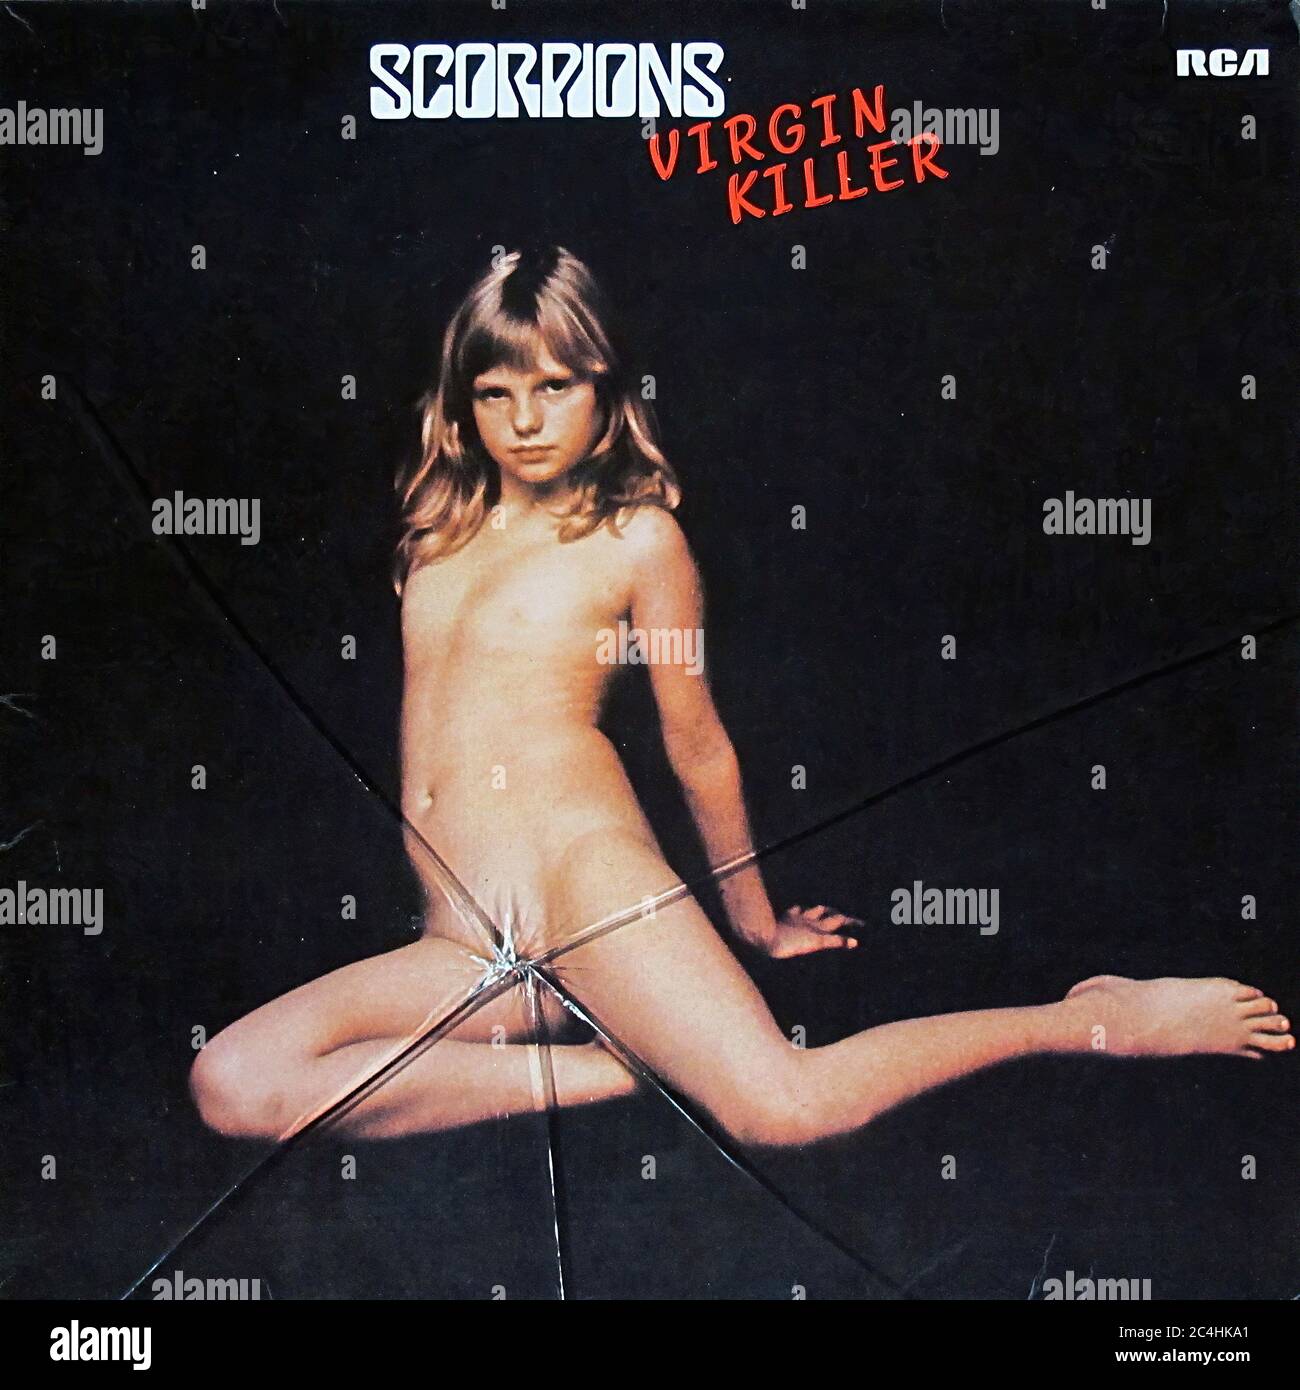 Scorpions Virgin Killer Unzensiert Erste Deutsche Pressung 12'' Lp Vinyl - Vintage Record Cover 02 Stockfoto